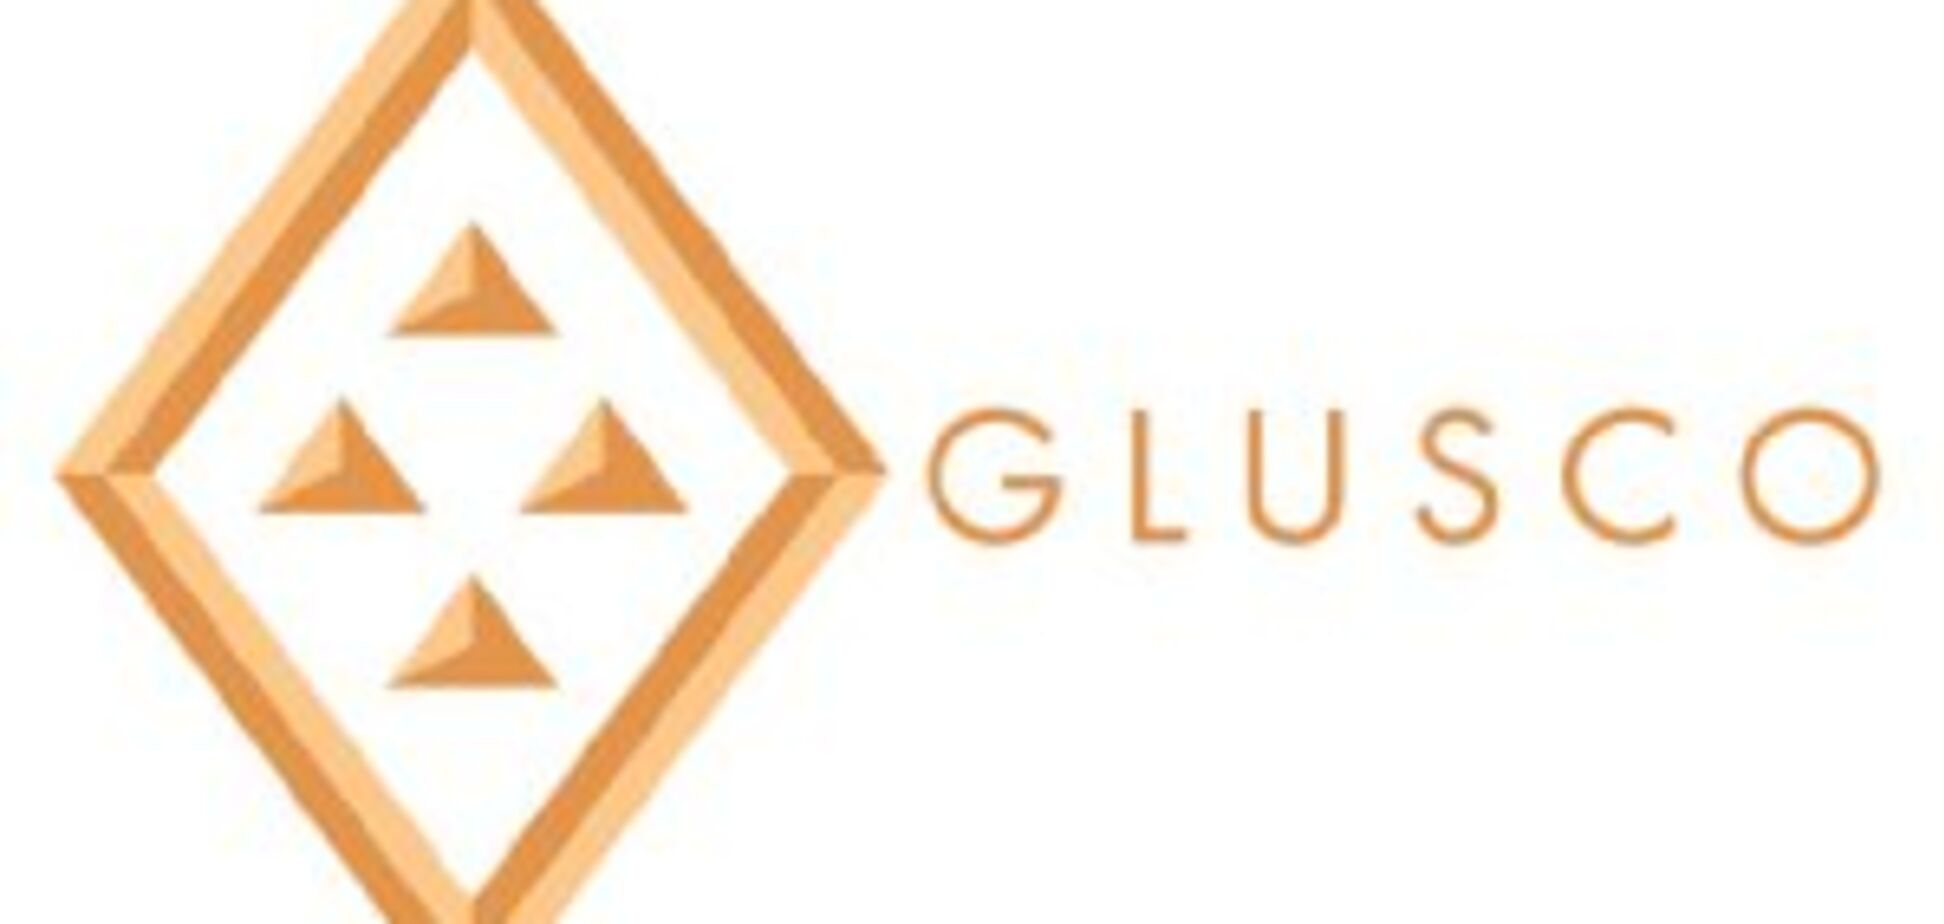 Glusco демонстрирует рост розничных продаж в 2018 году